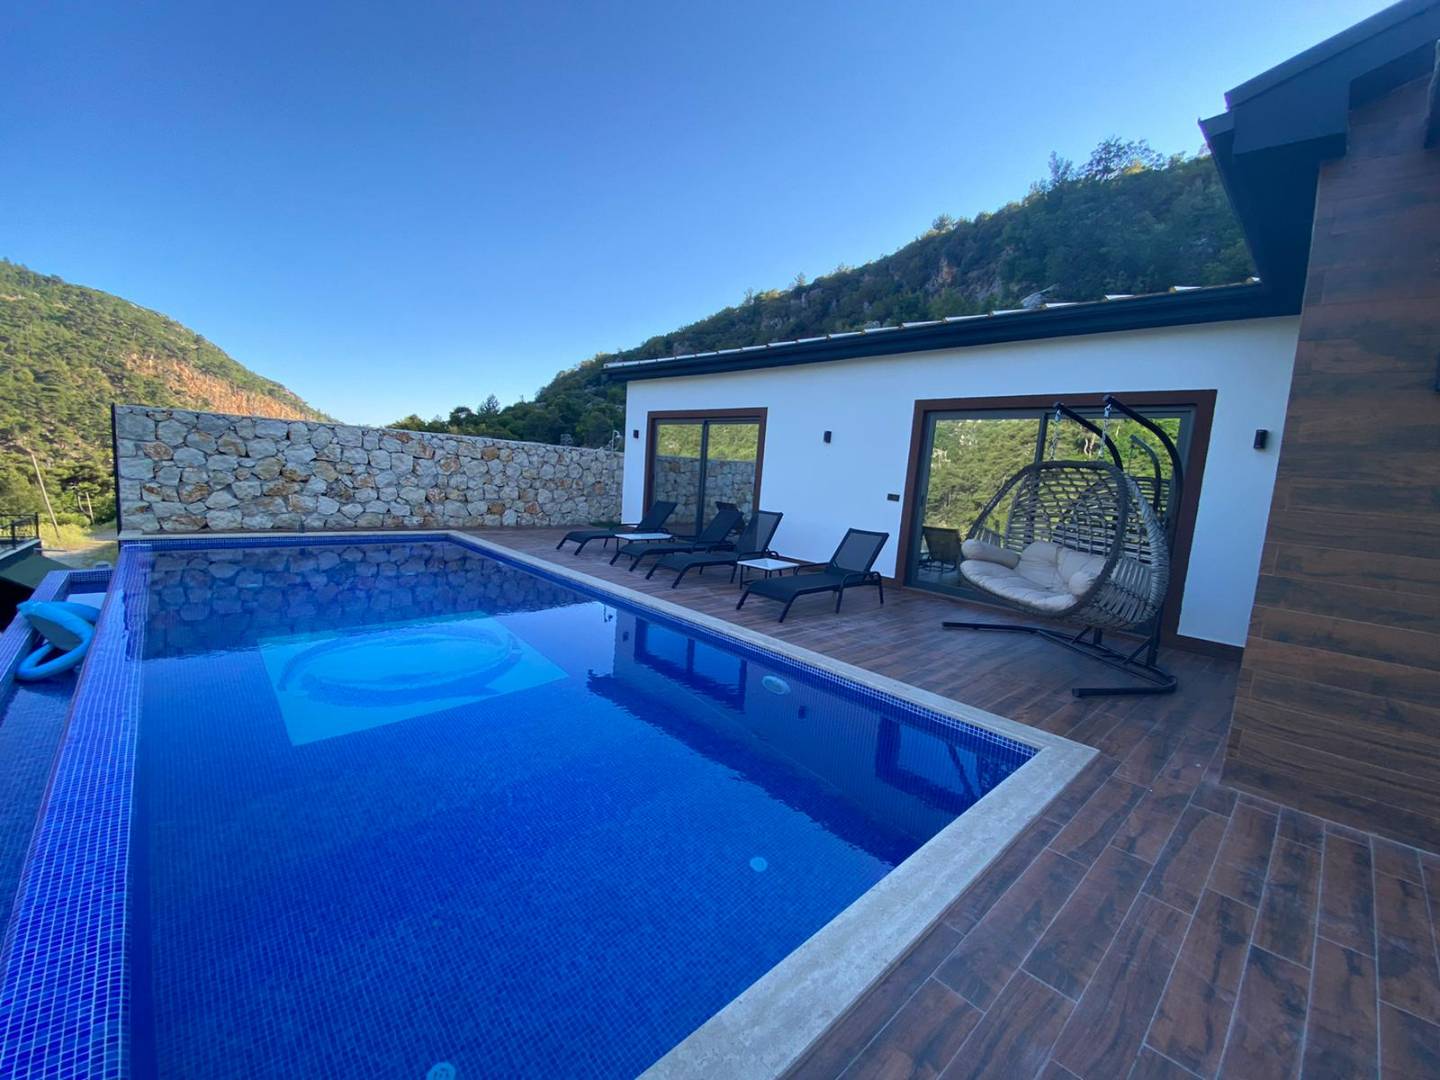 Kalkan Sarıbelen'de Doğa Manzaralı, Korunaklı Özel Havuzlu Kiralık Villa